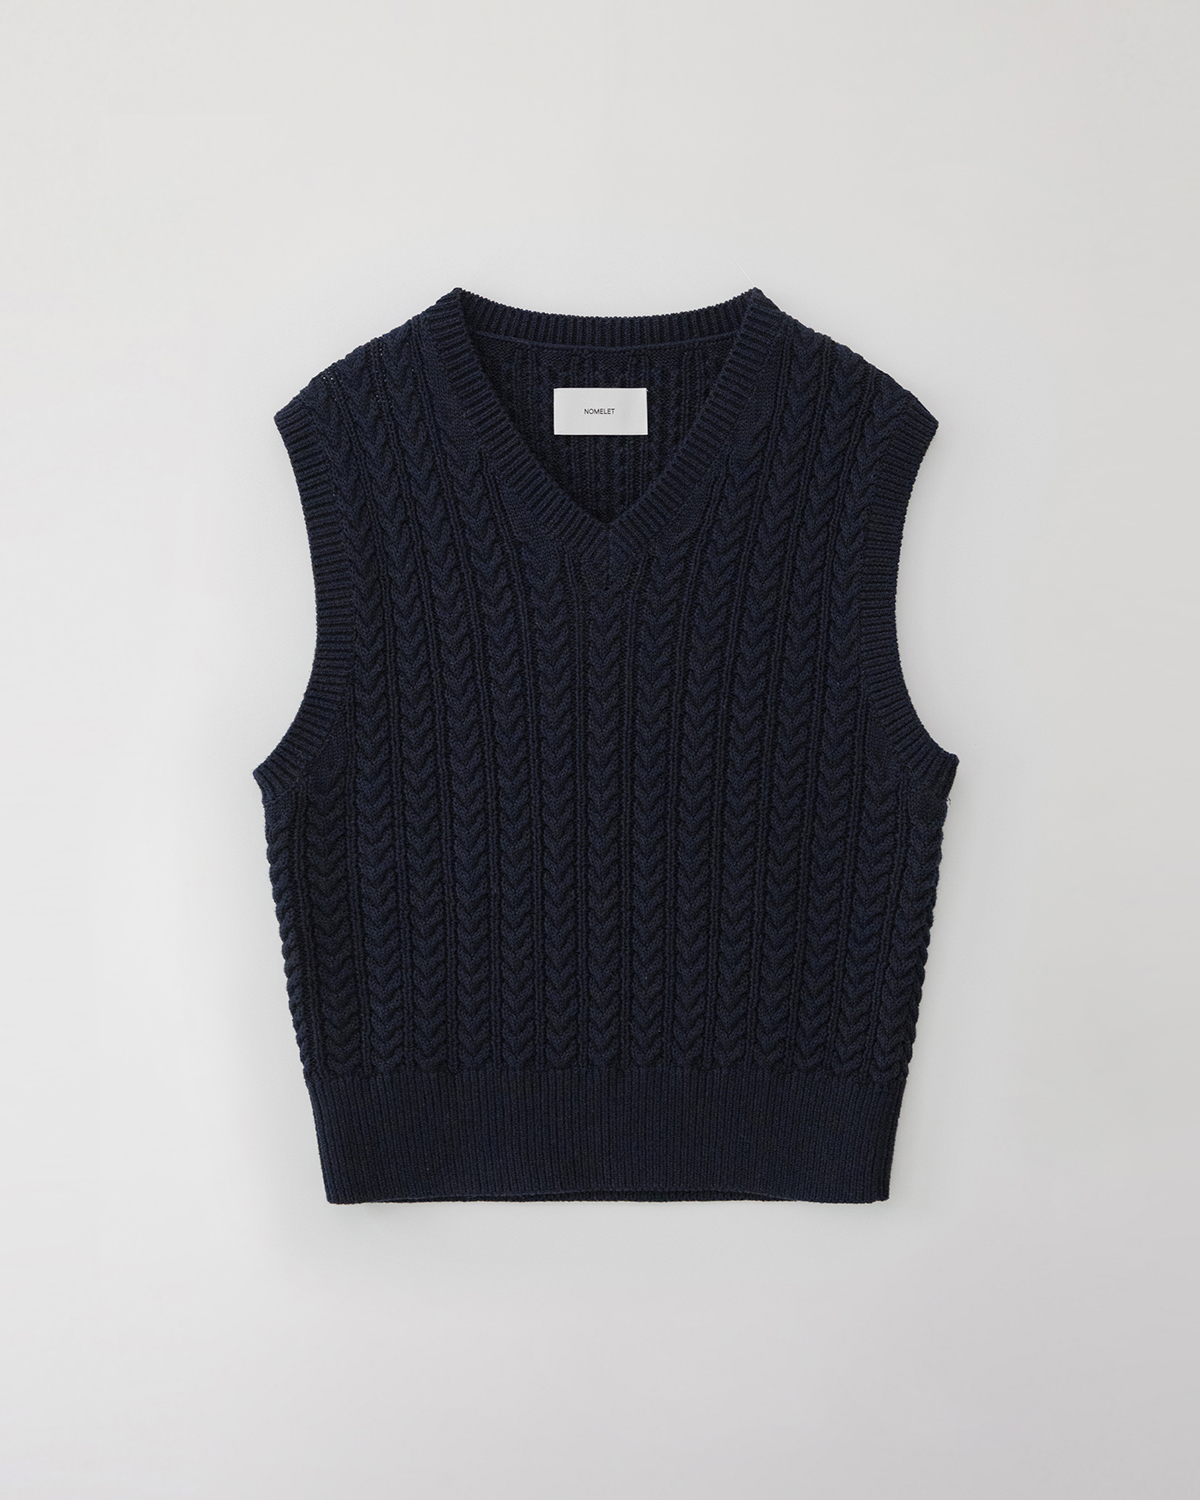 Rachel cable knit vest - deep navy